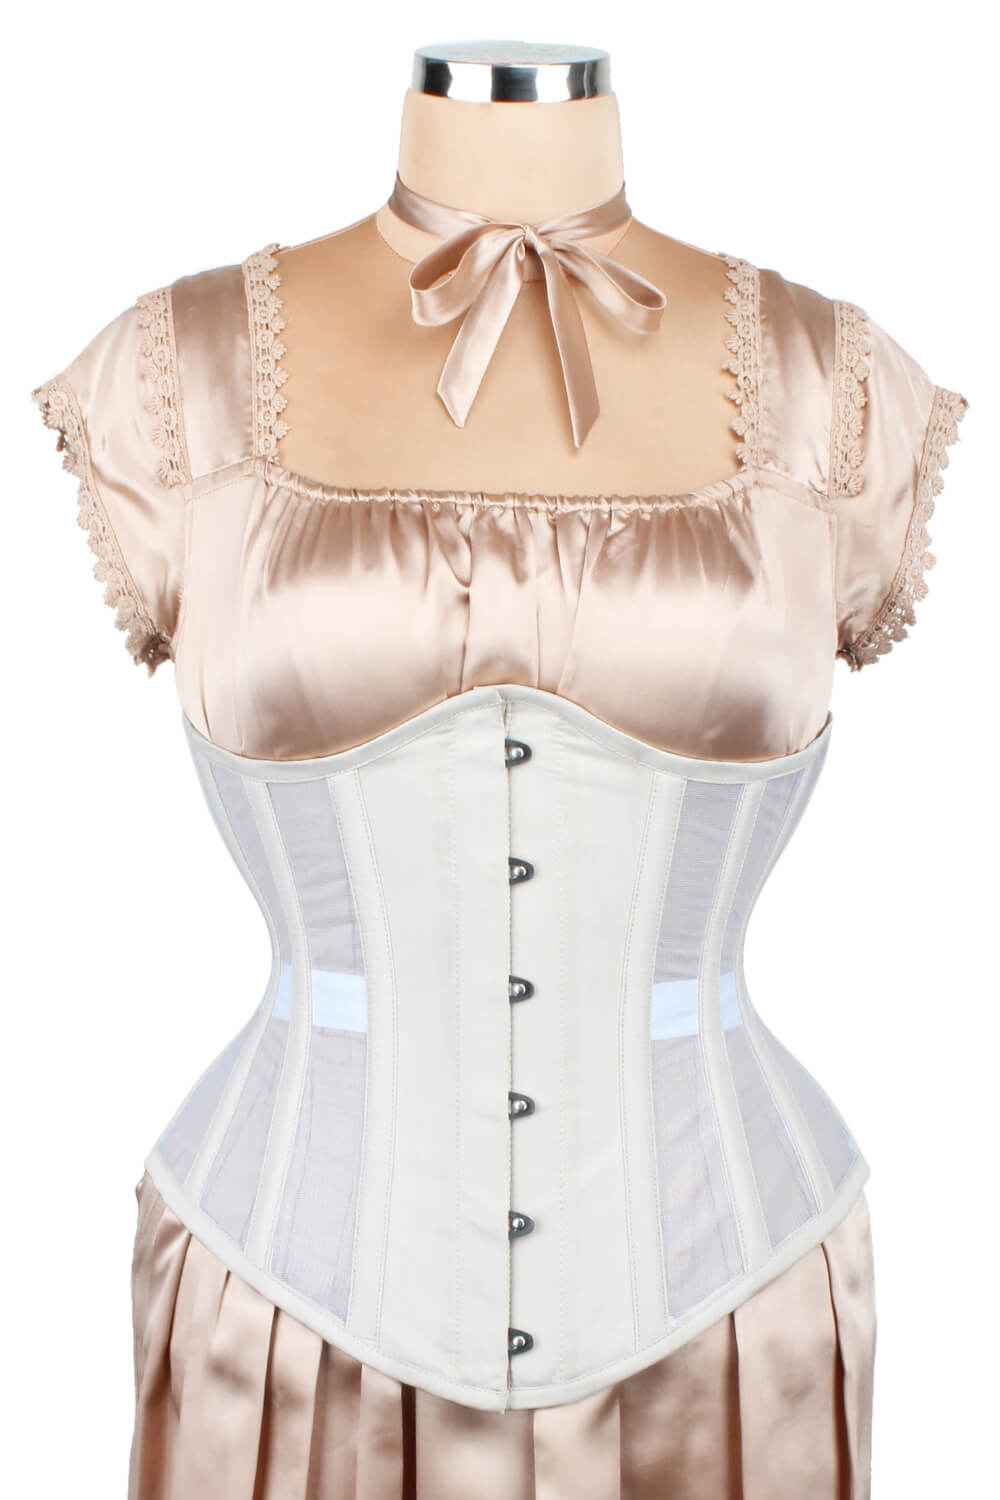 https://www.corsetdeal.com/cdn/shop/products/EL-196_F_Mesh_with_Taffeta_Underbust_Corset_ELC-601.jpg?v=1678178246